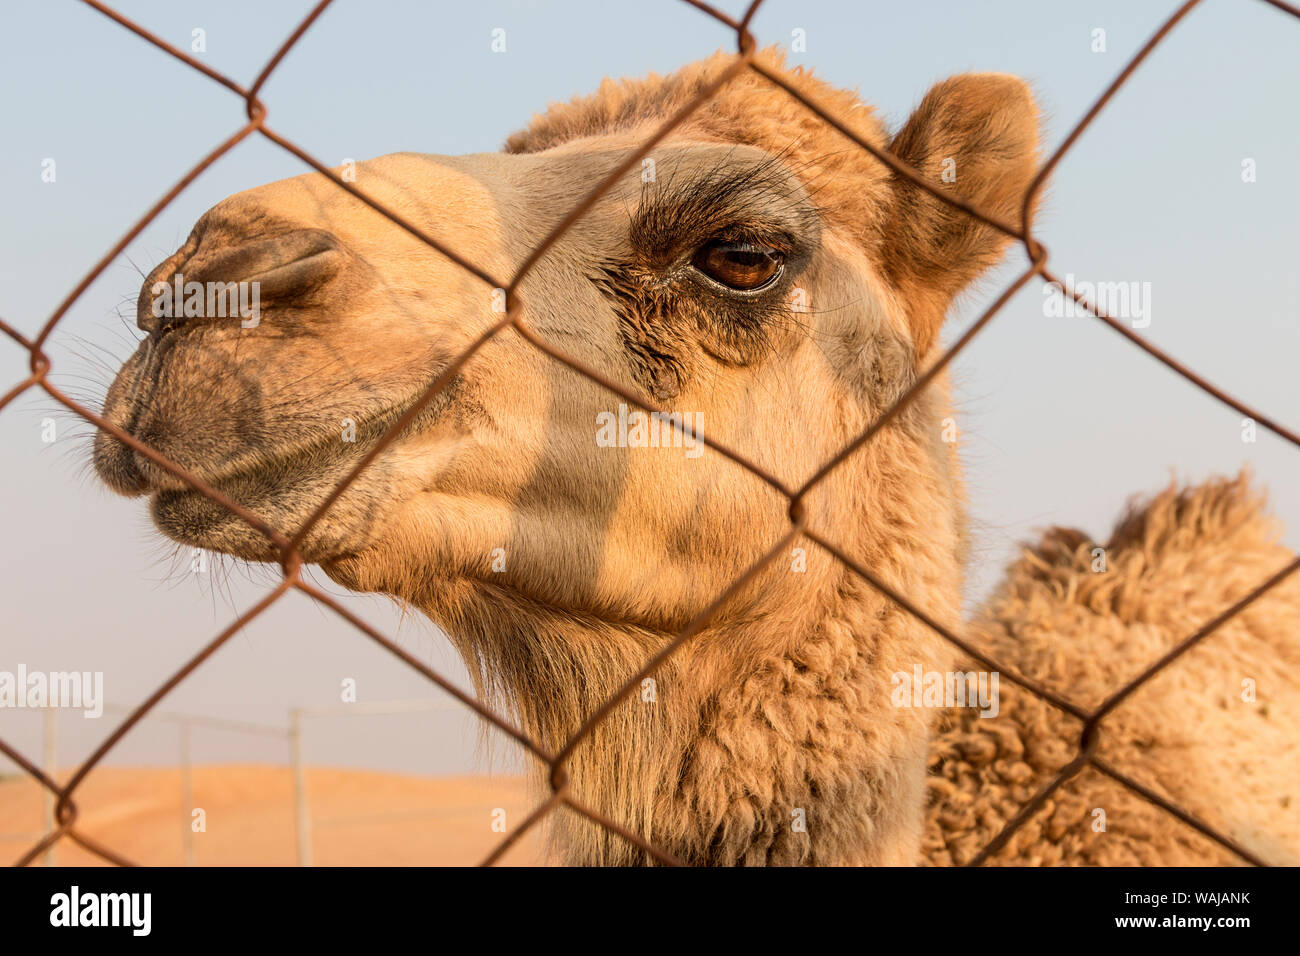 Dubaï, Émirats arabes unis. Close-up d'un jeune chameau chameau à une ferme. (Usage éditorial uniquement) Banque D'Images